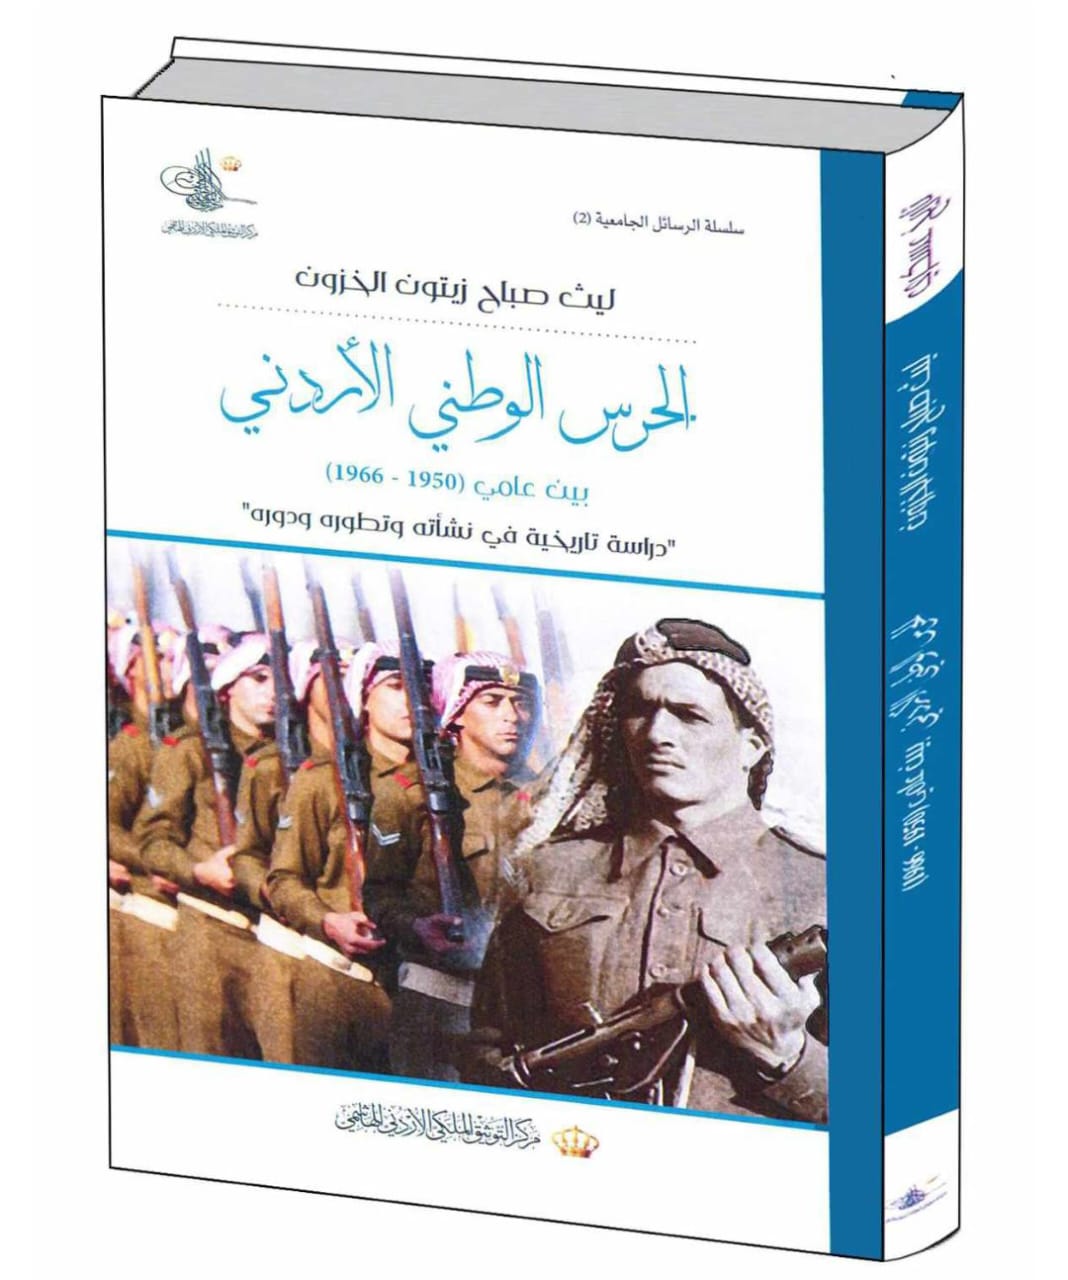 كتاب الحرس الوطني الاردني لـلكاتب ليث الزبن في معرض عمان للكتاب